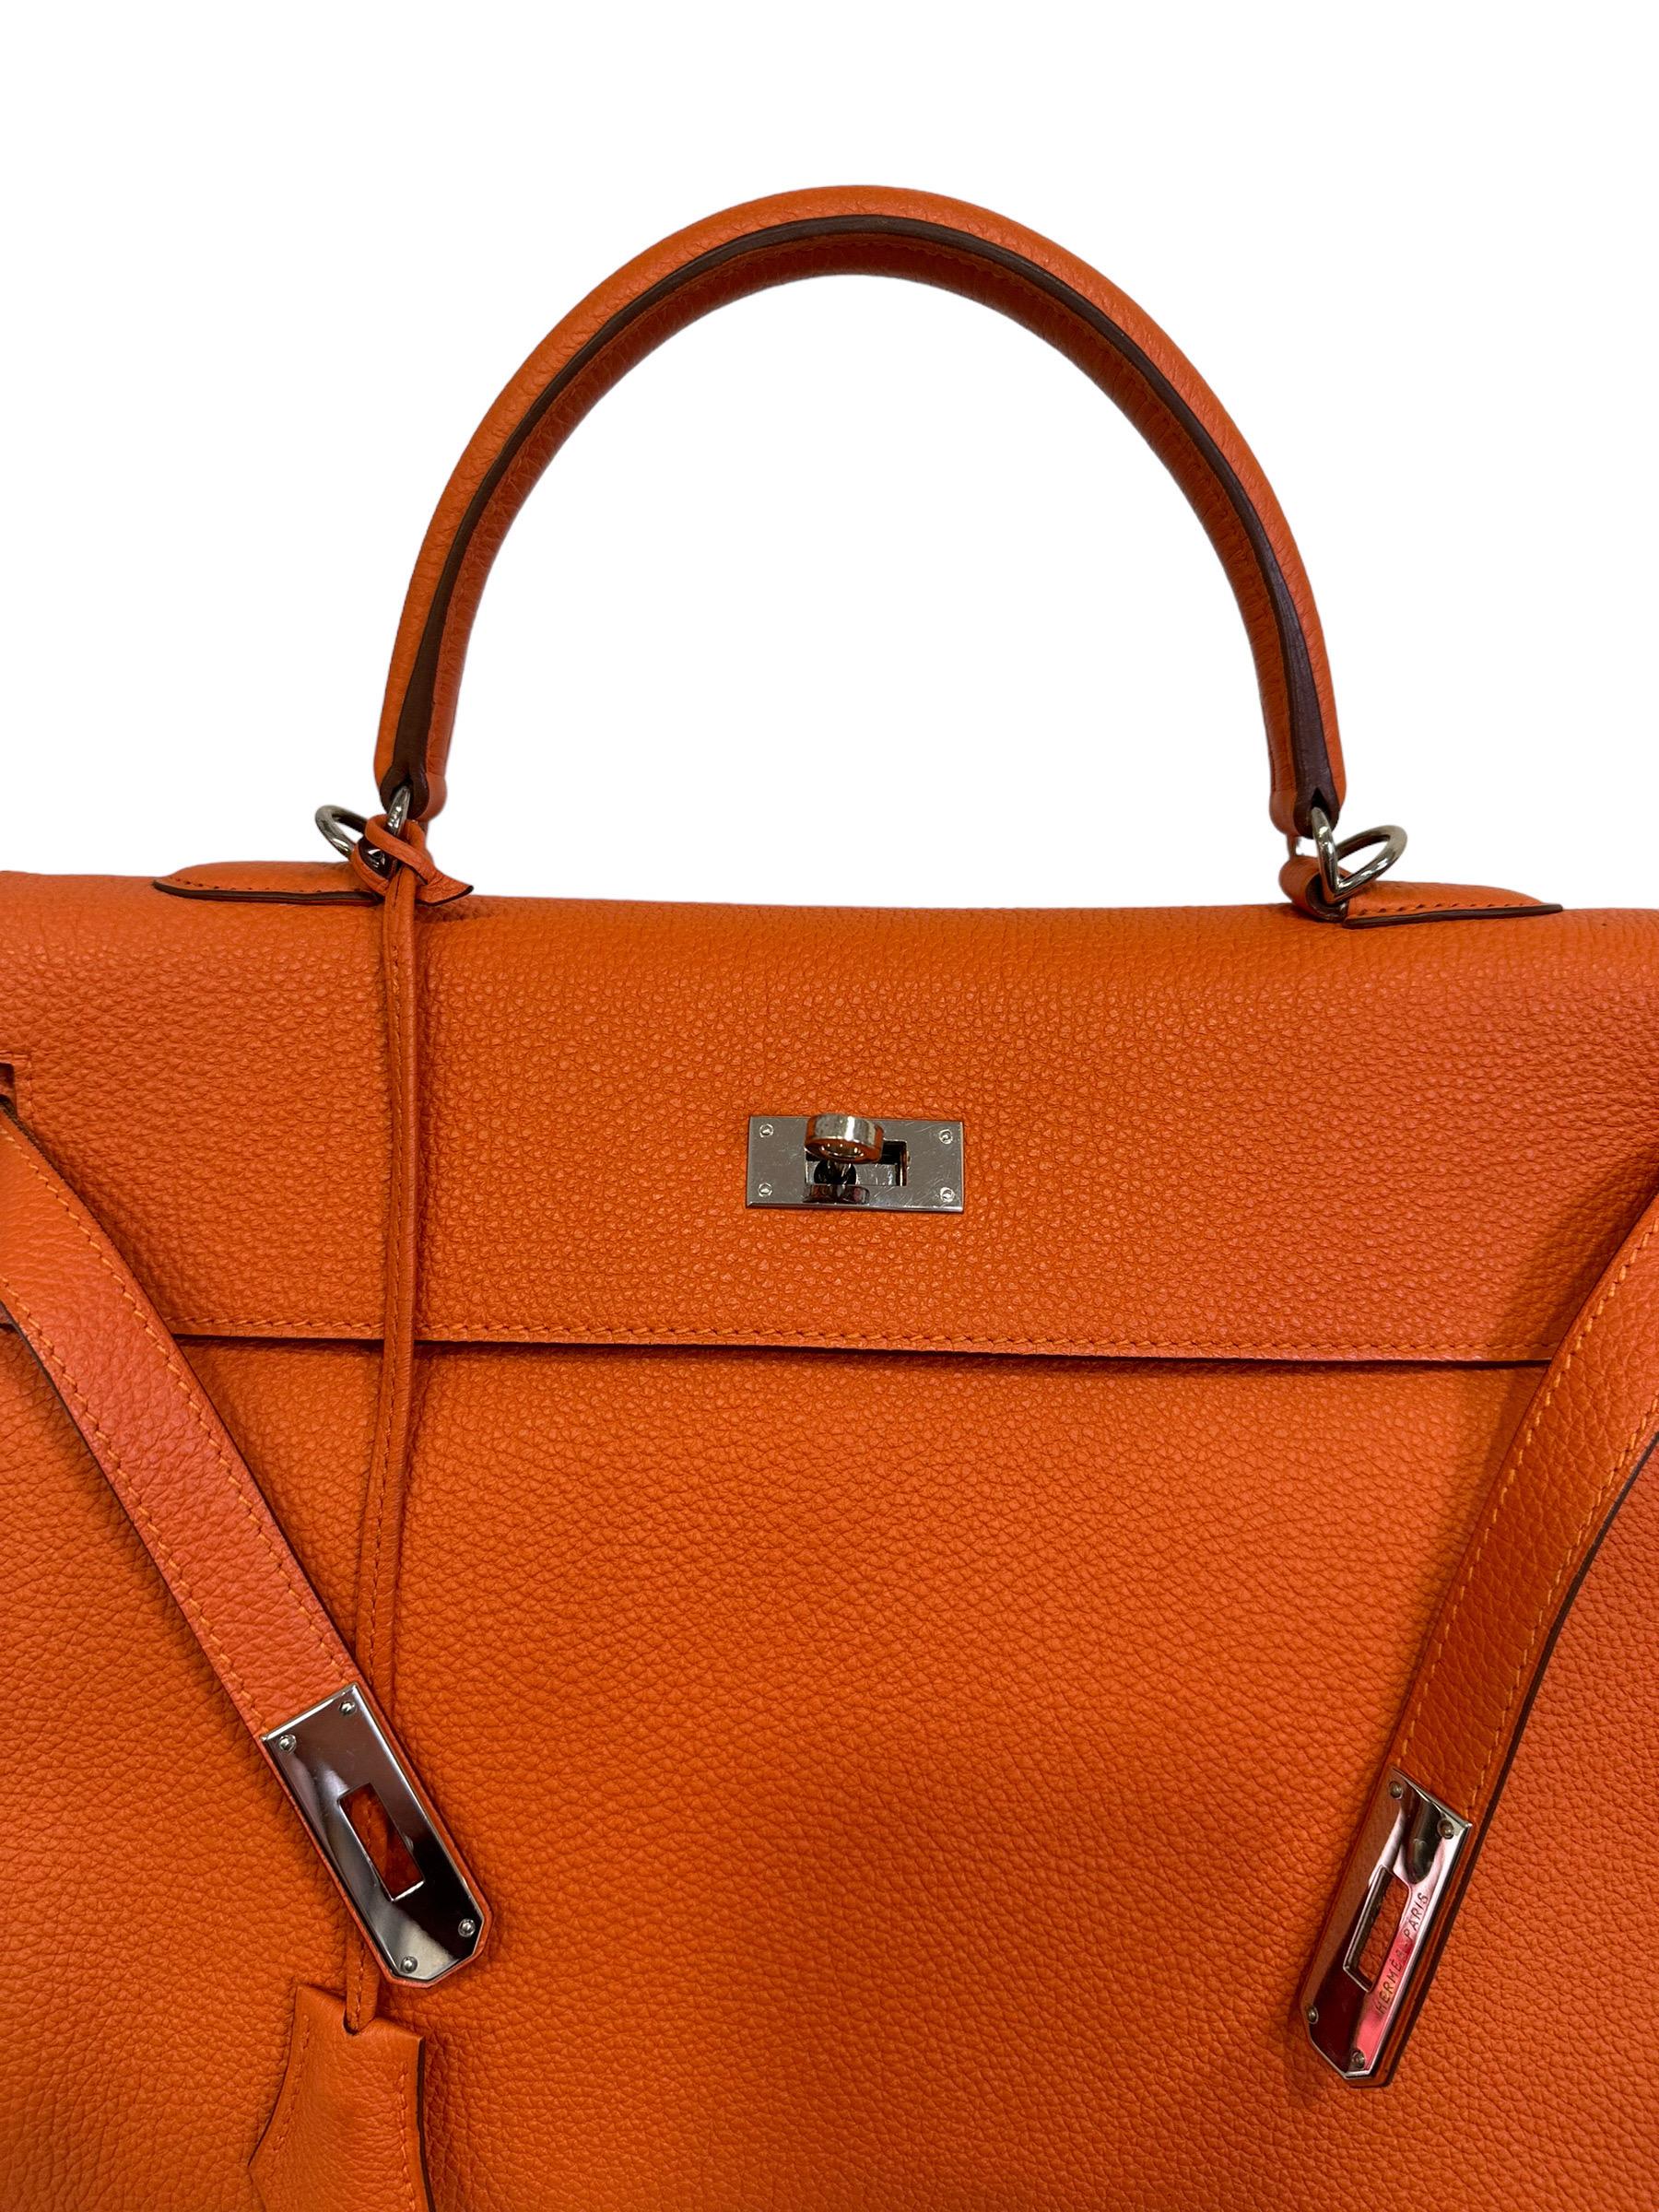 2011 Hermès Kelly 35 Fjord Leather Orange Top Handle Bag  7